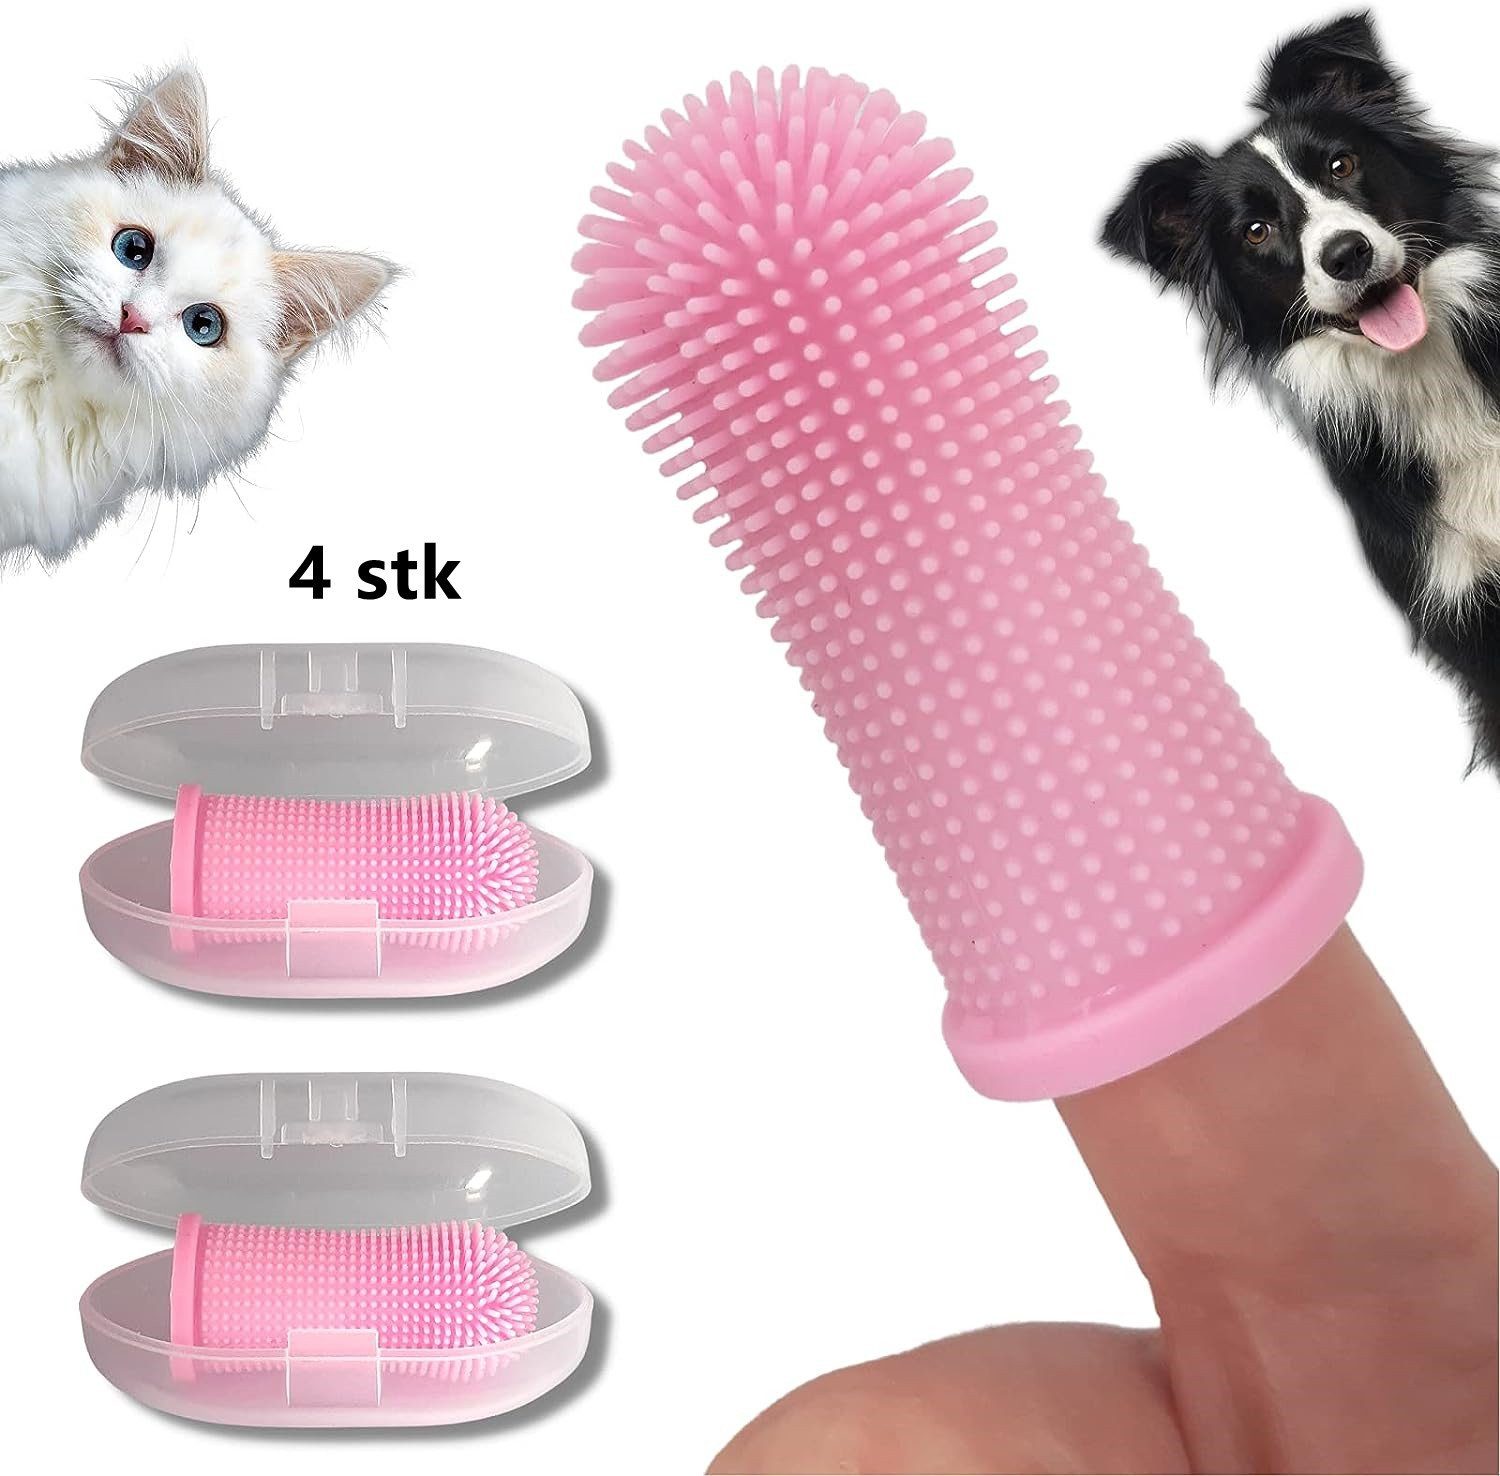 XDeer Tier-Fingerzahnbürste Fingerzahnbürste,4 stk Zahnbürste 360º Pets Reinigung Zahnbürste, mit umlaufenden Borsten,Silikon,Zahnpflege,Aufbewahrungsbox